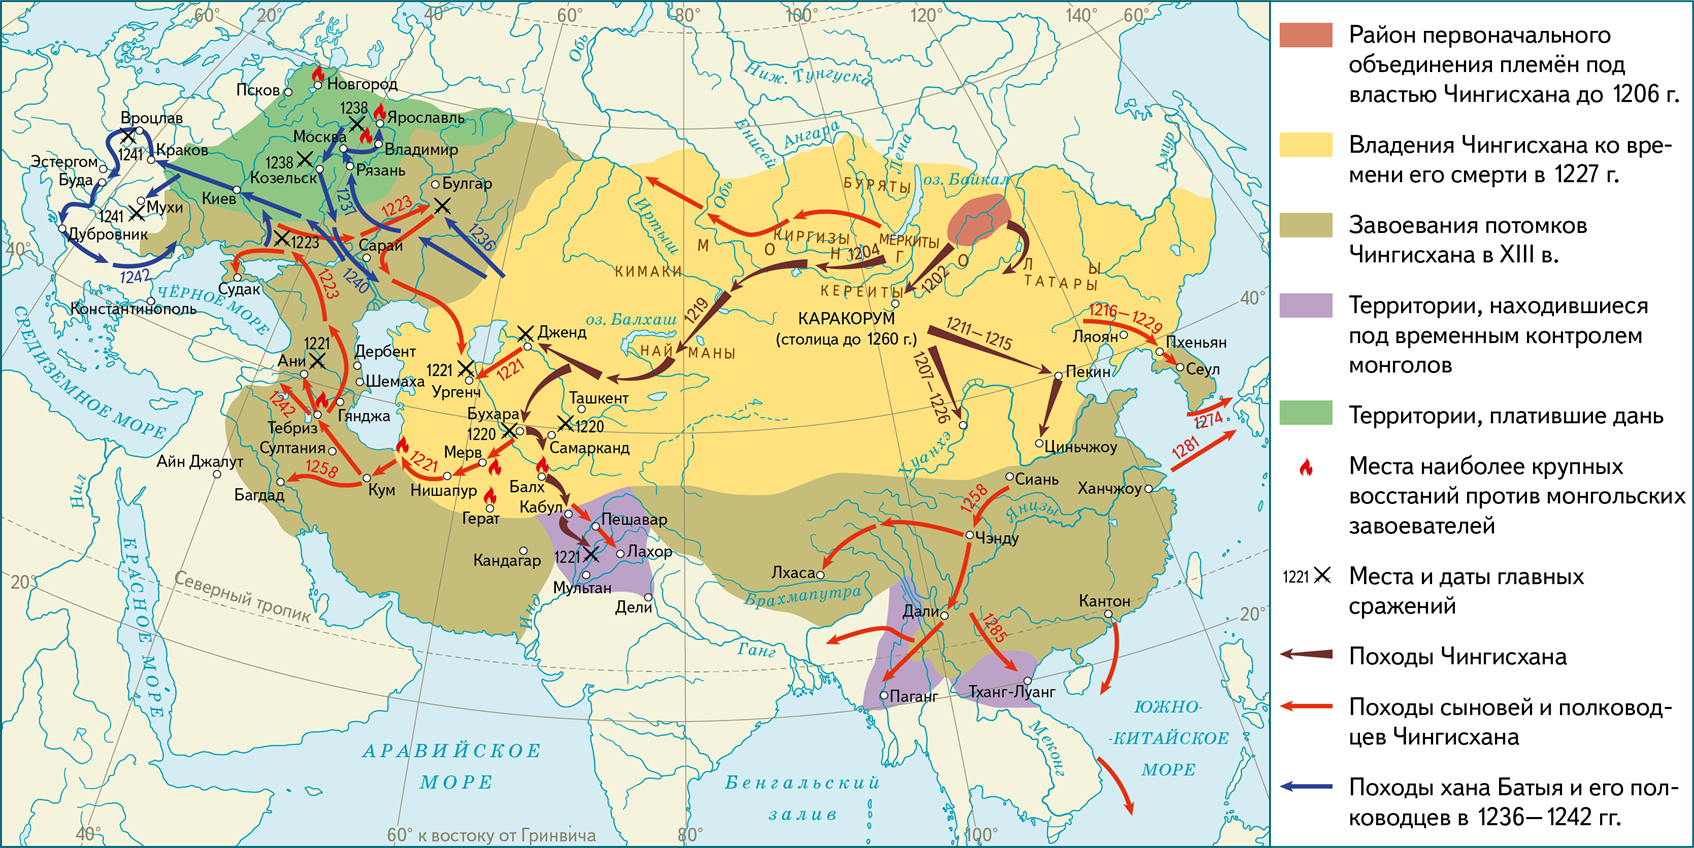 Завоюет все страны. Походы Чингисхана карта. Монгольские завоевания Чингисхана на карте. Монгольская Империя в начале 13 века карта. Монгольские завоевания в 13 веке карта.